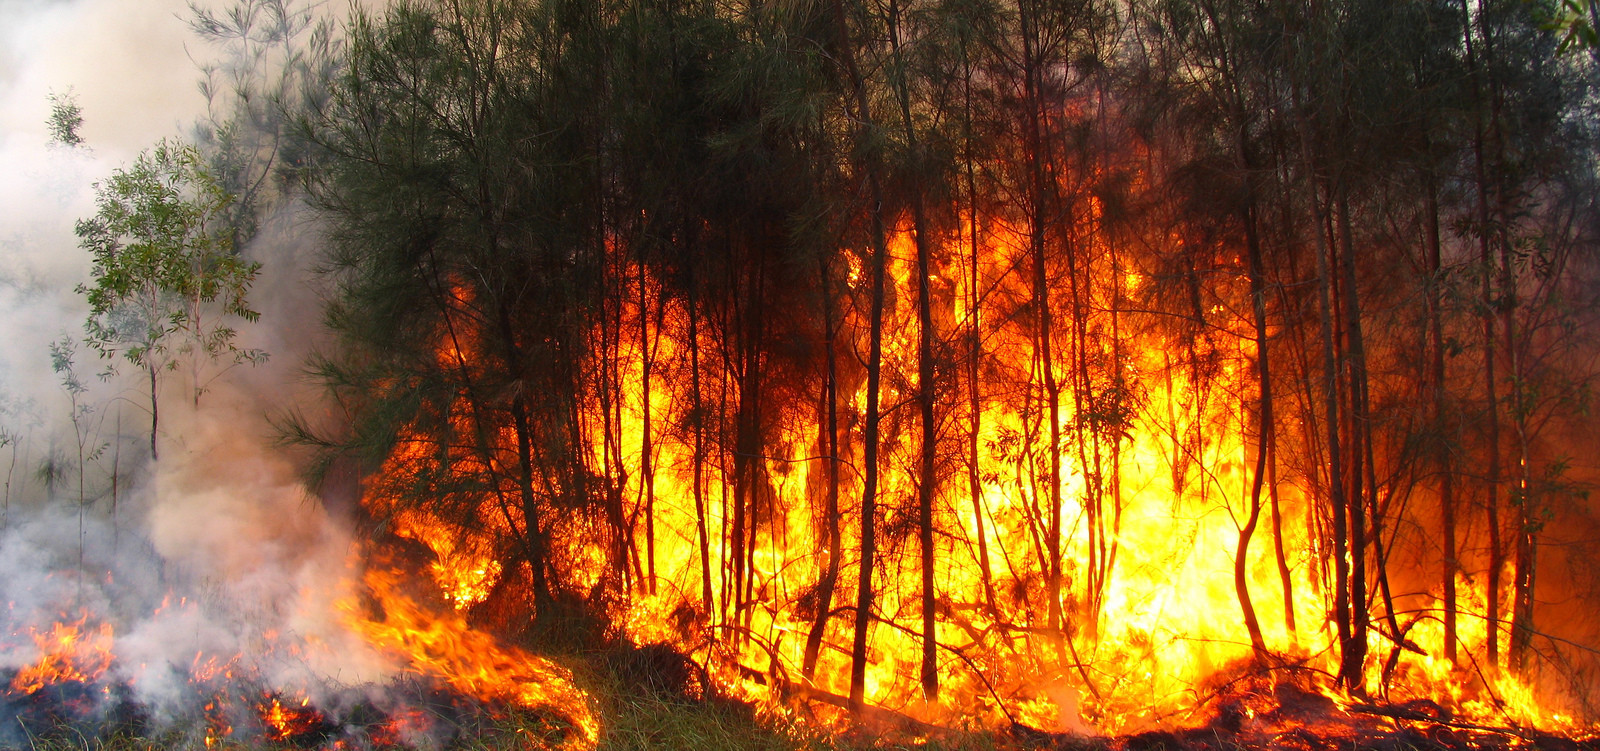 Santa Catarina tem aumento de 400% de incêndios em vegetação em 2020